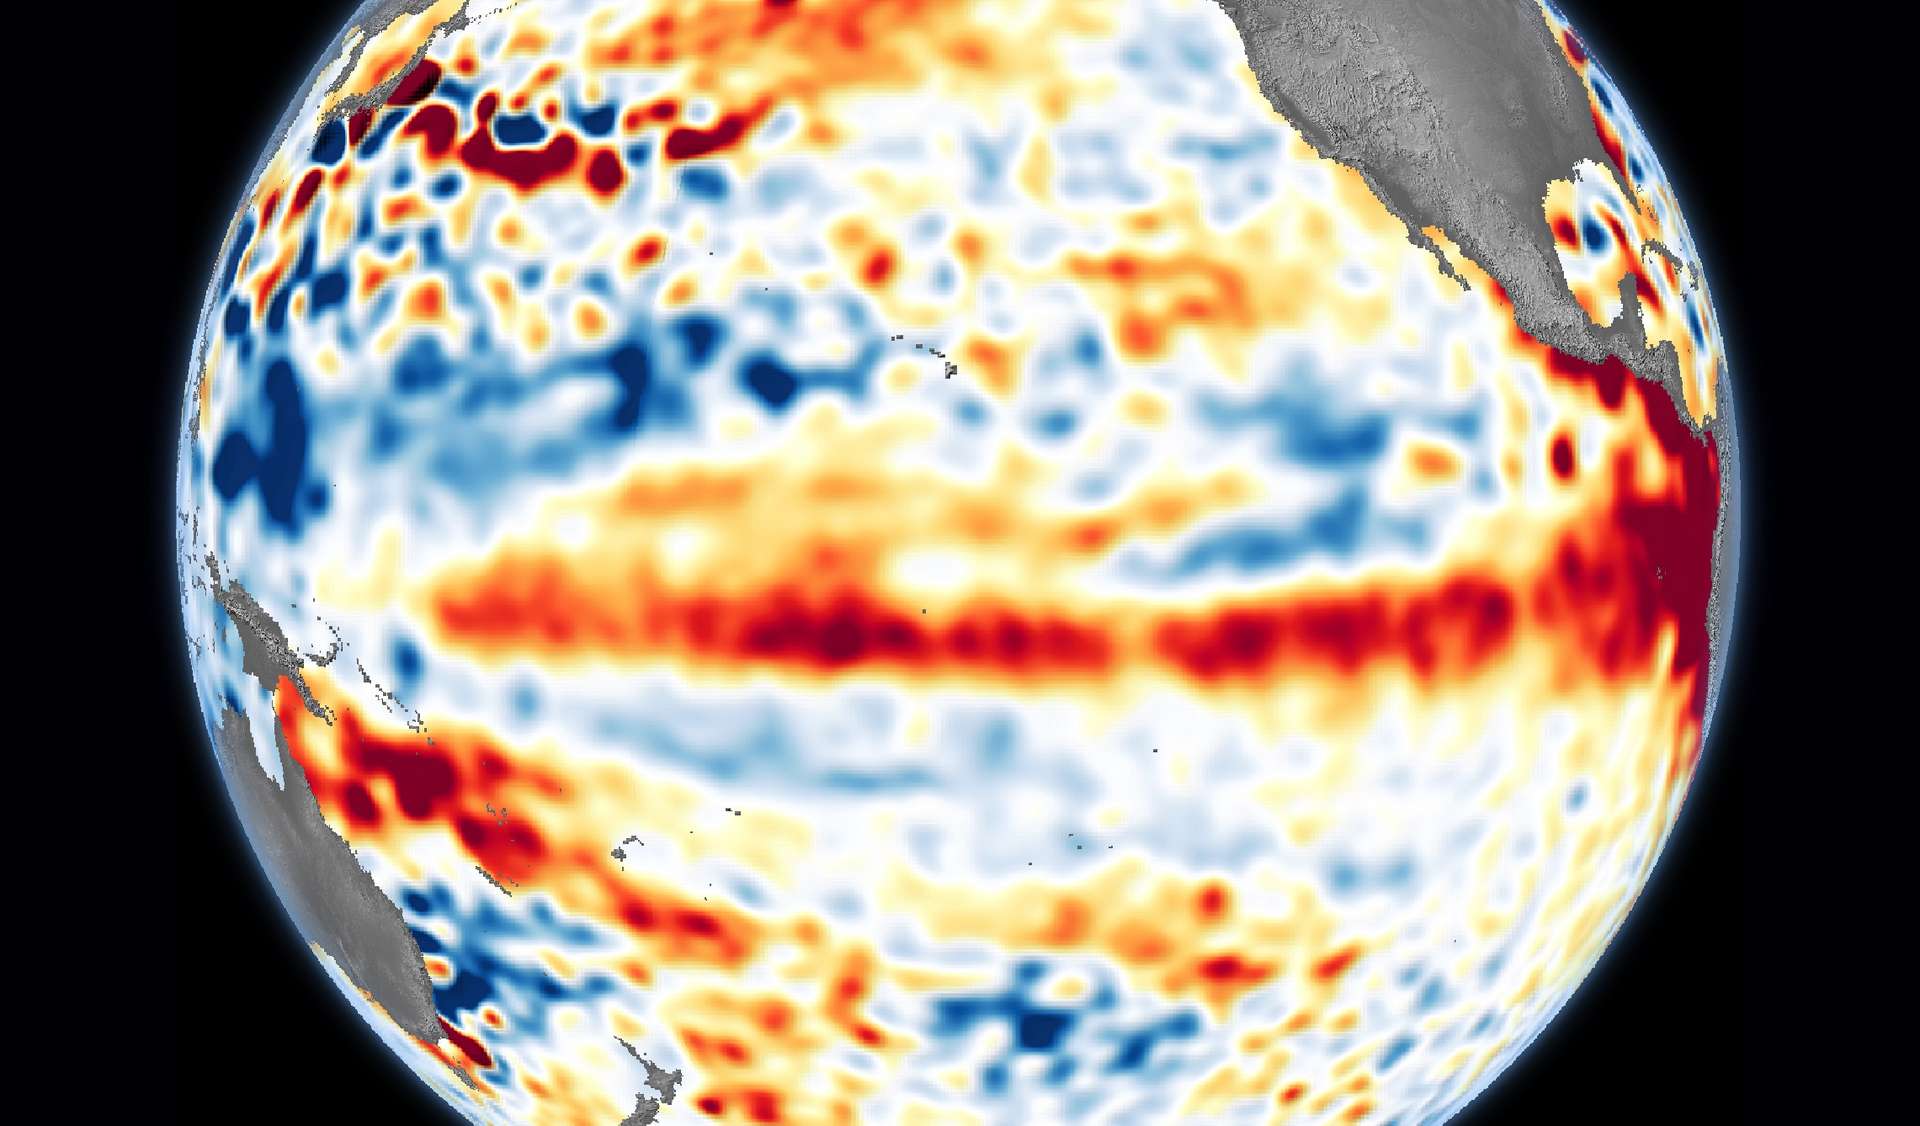 Les scientifiques australiens envisagent un El Niño d'une intensité exceptionnelle